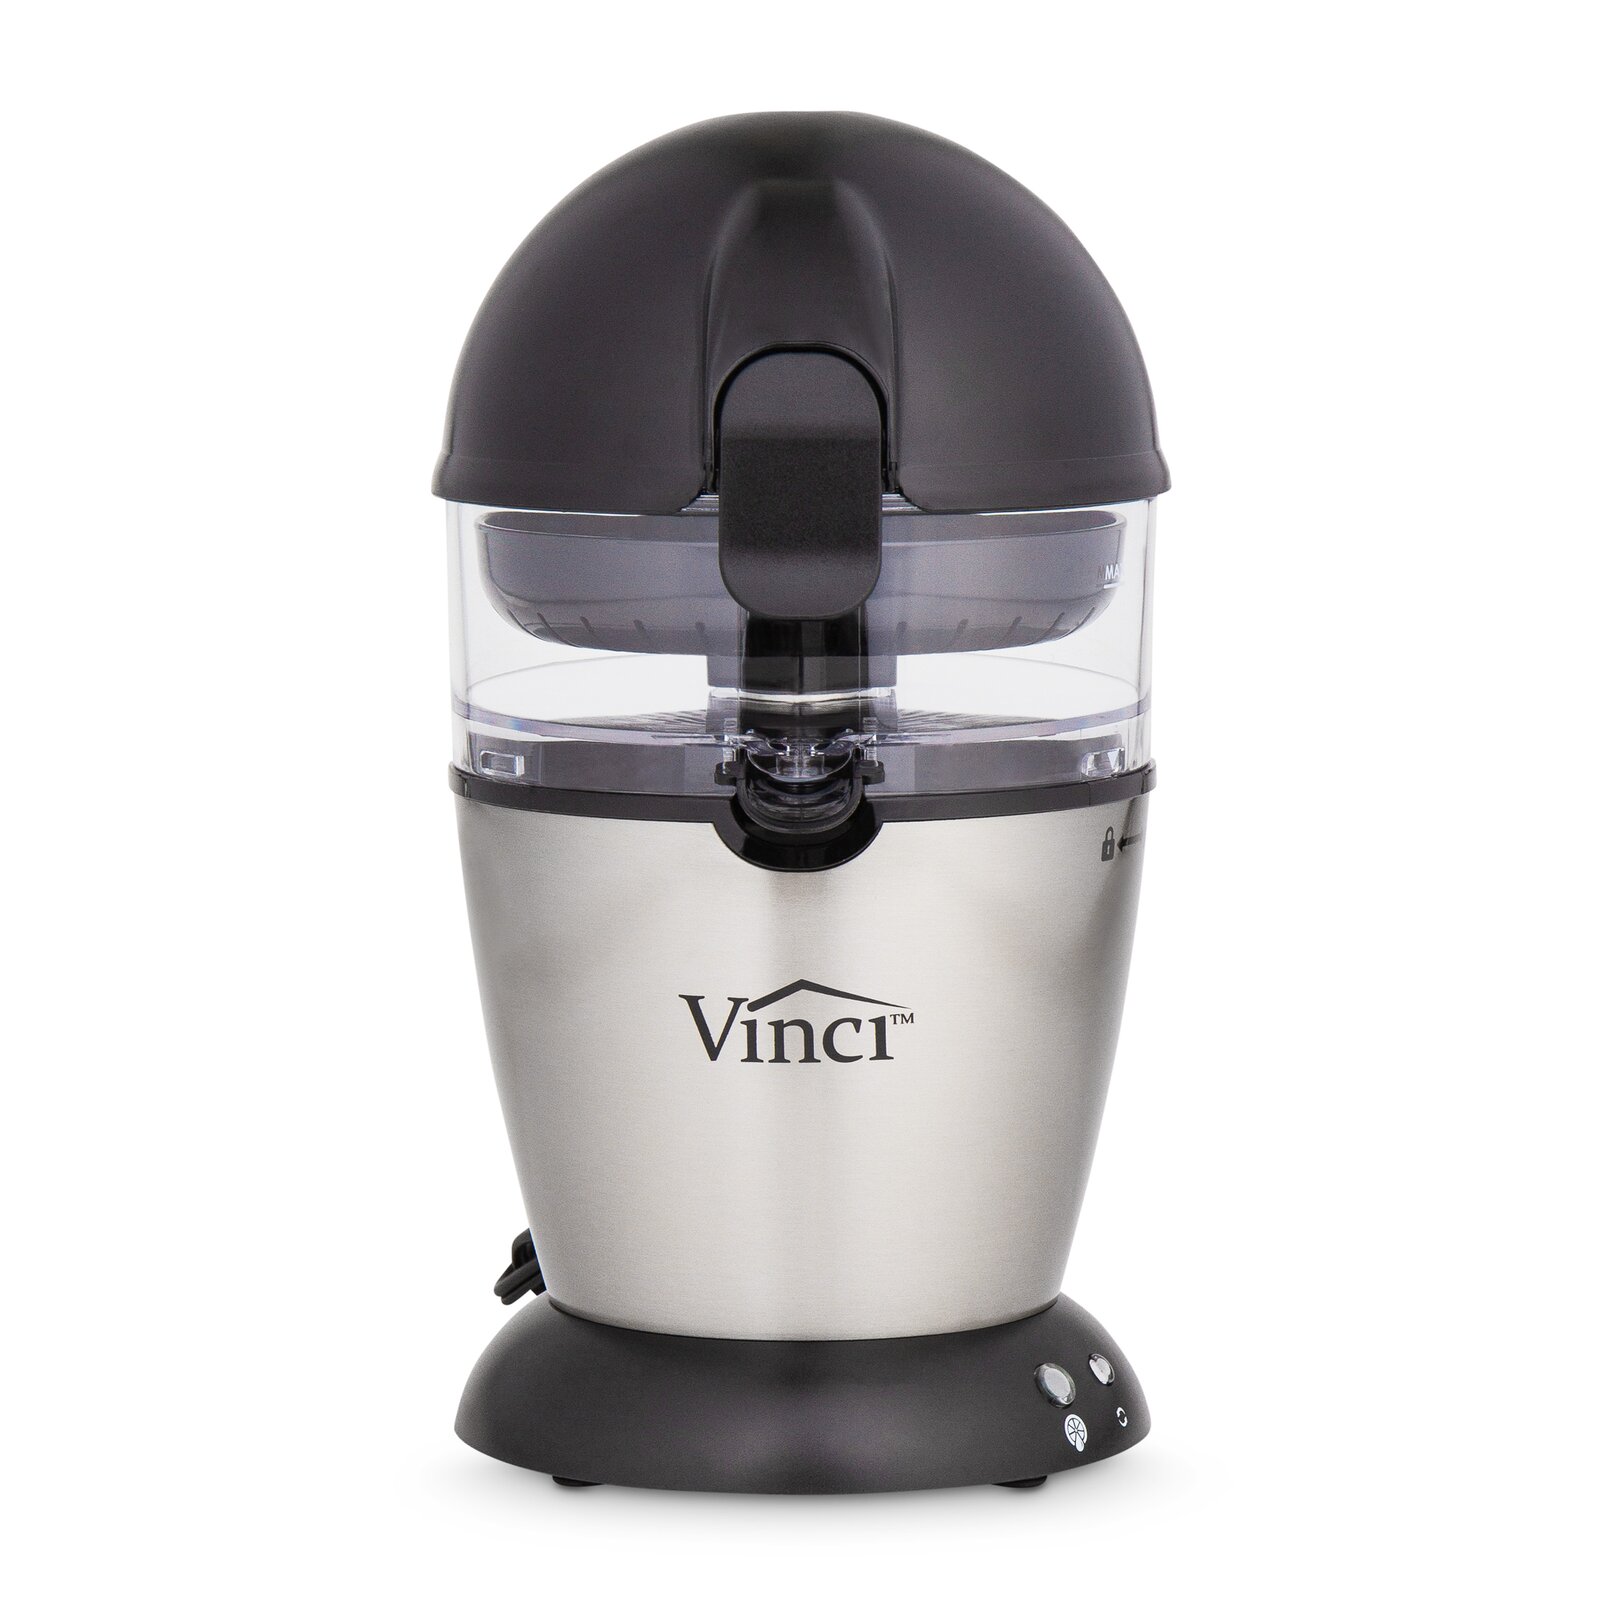 Vinci Hands-Free Electric Citrus Juicer & Reviews